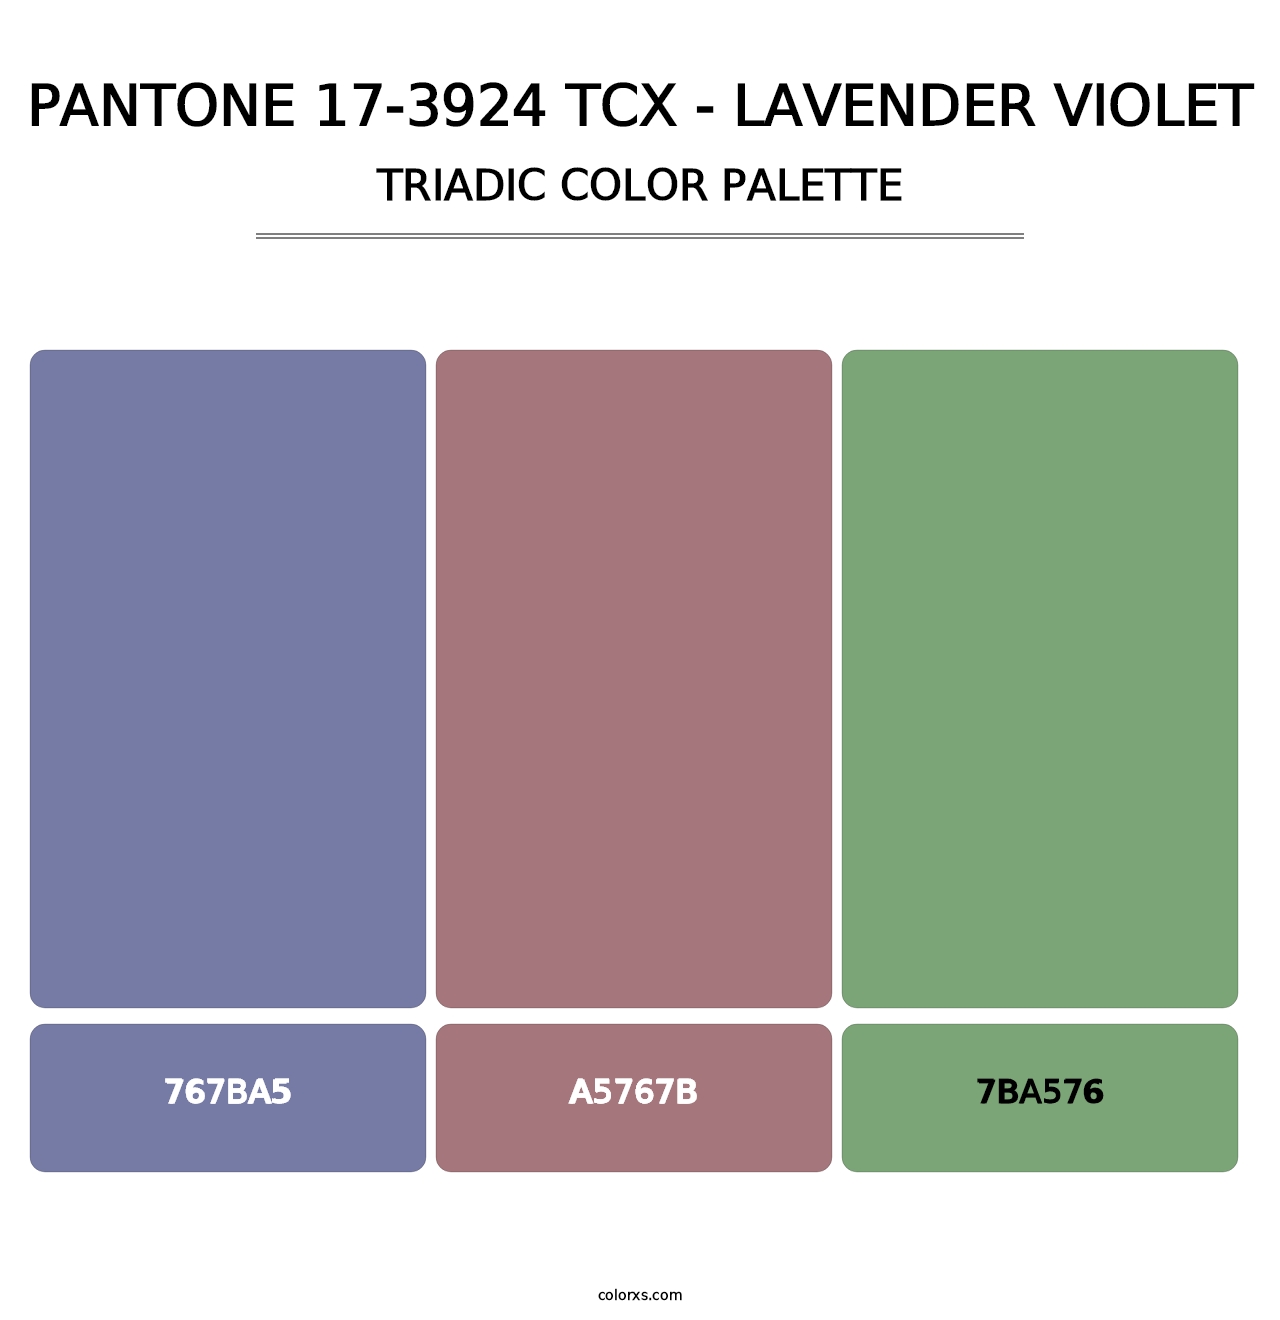 PANTONE 17-3924 TCX - Lavender Violet - Triadic Color Palette